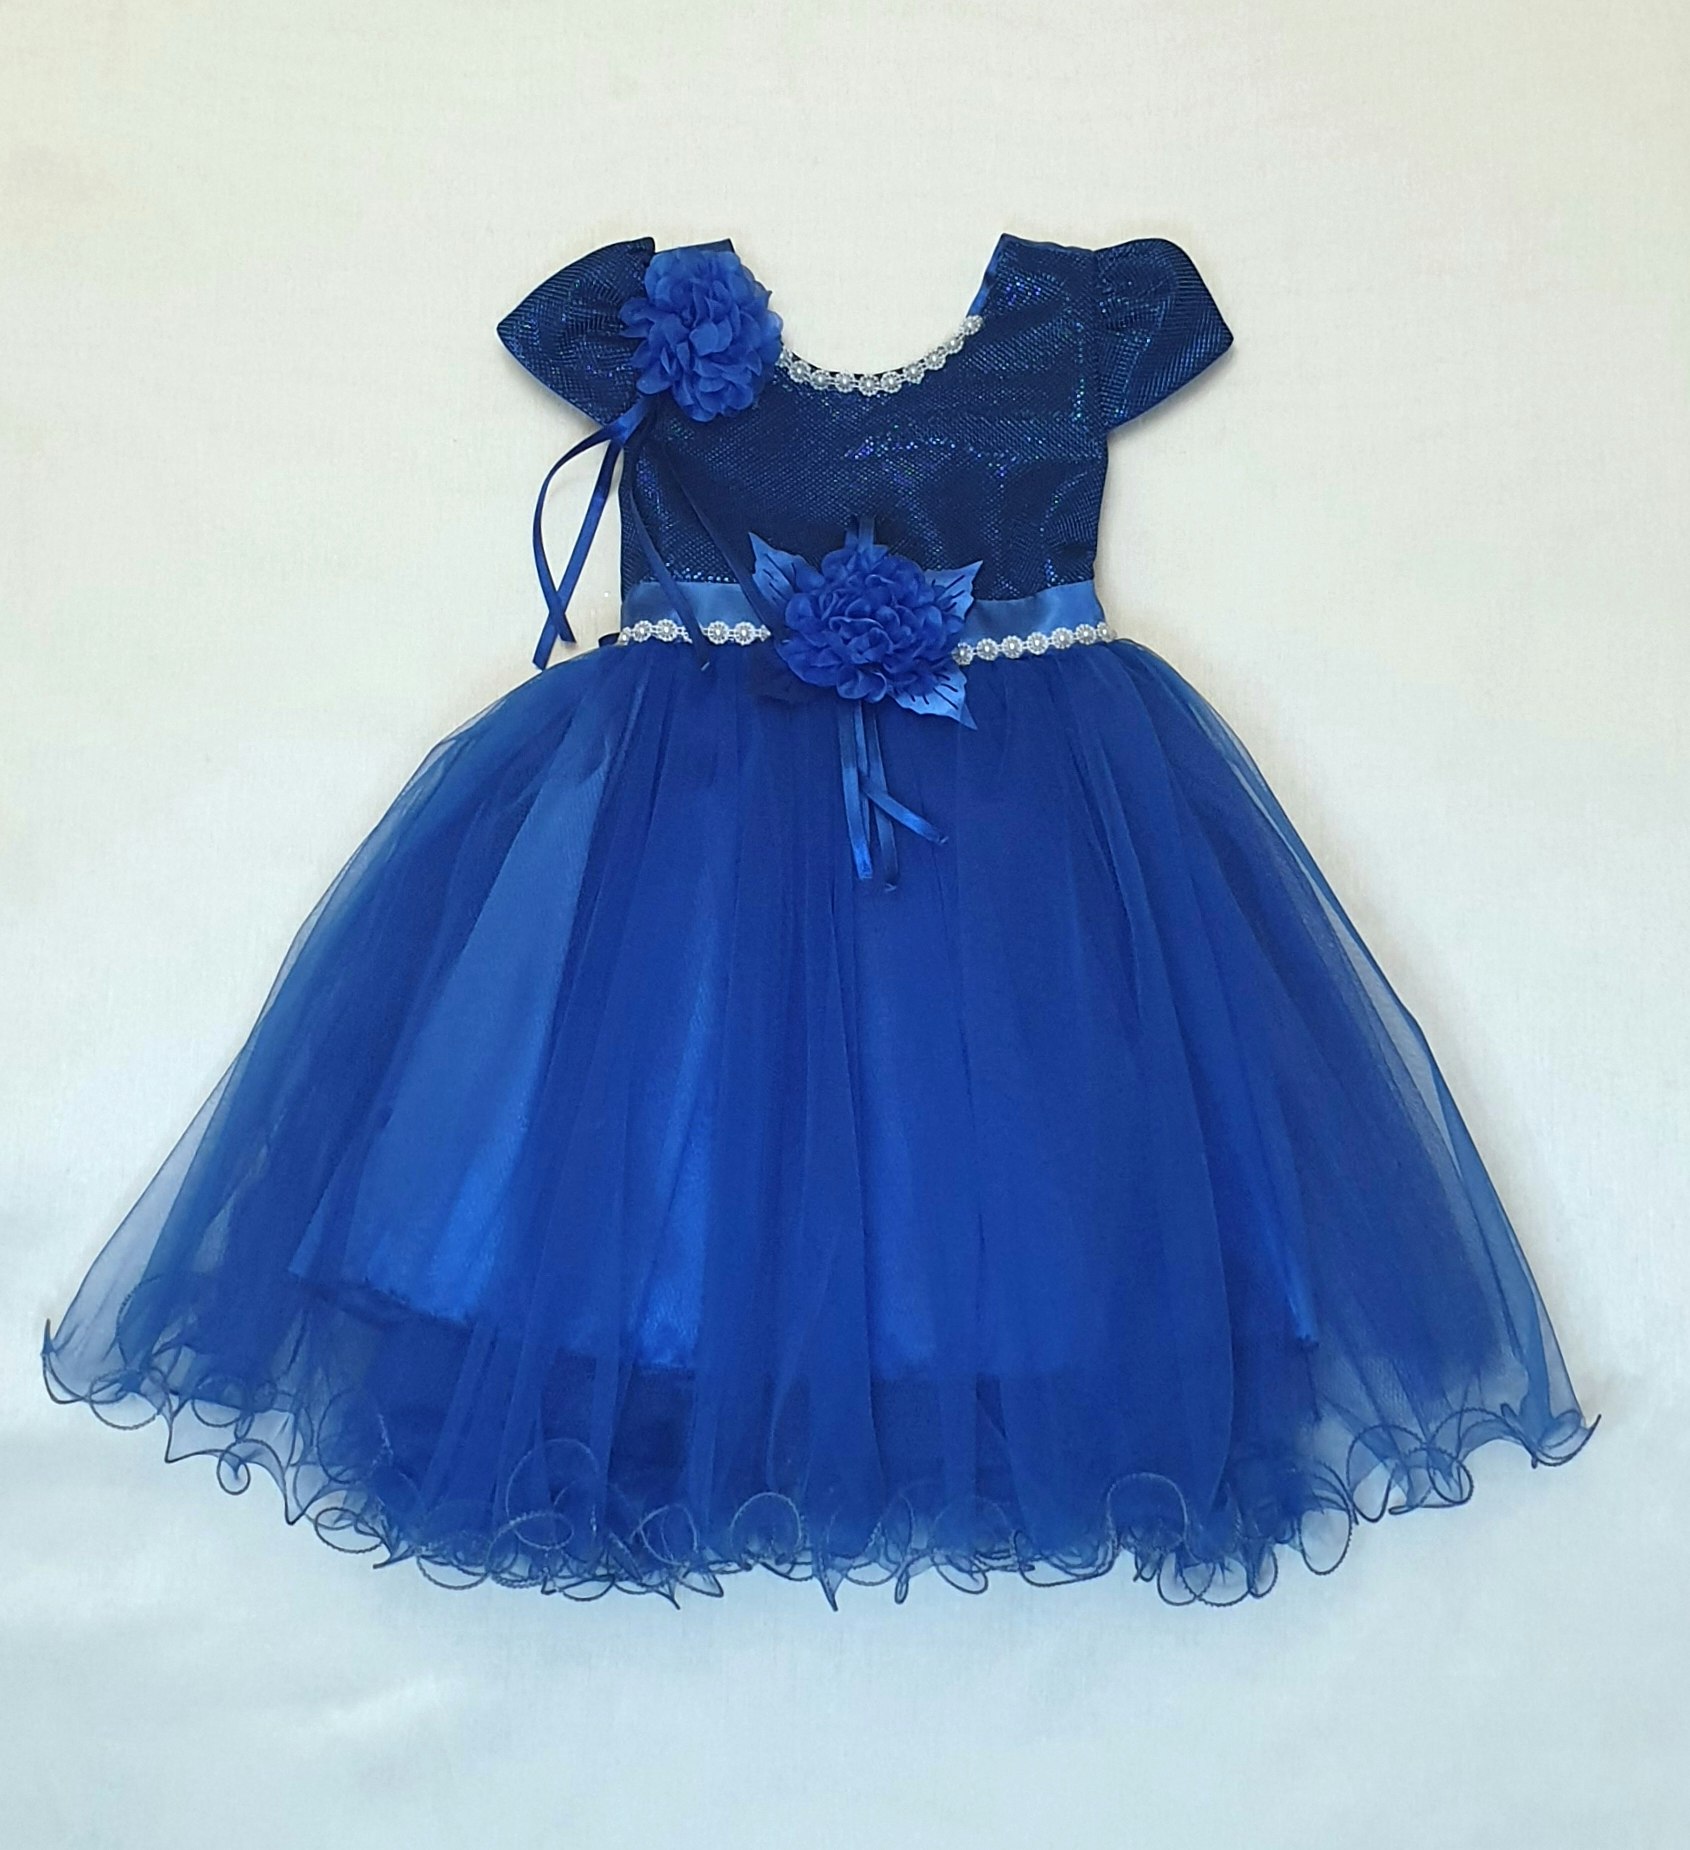 Festklänning flicka blå 1-5år